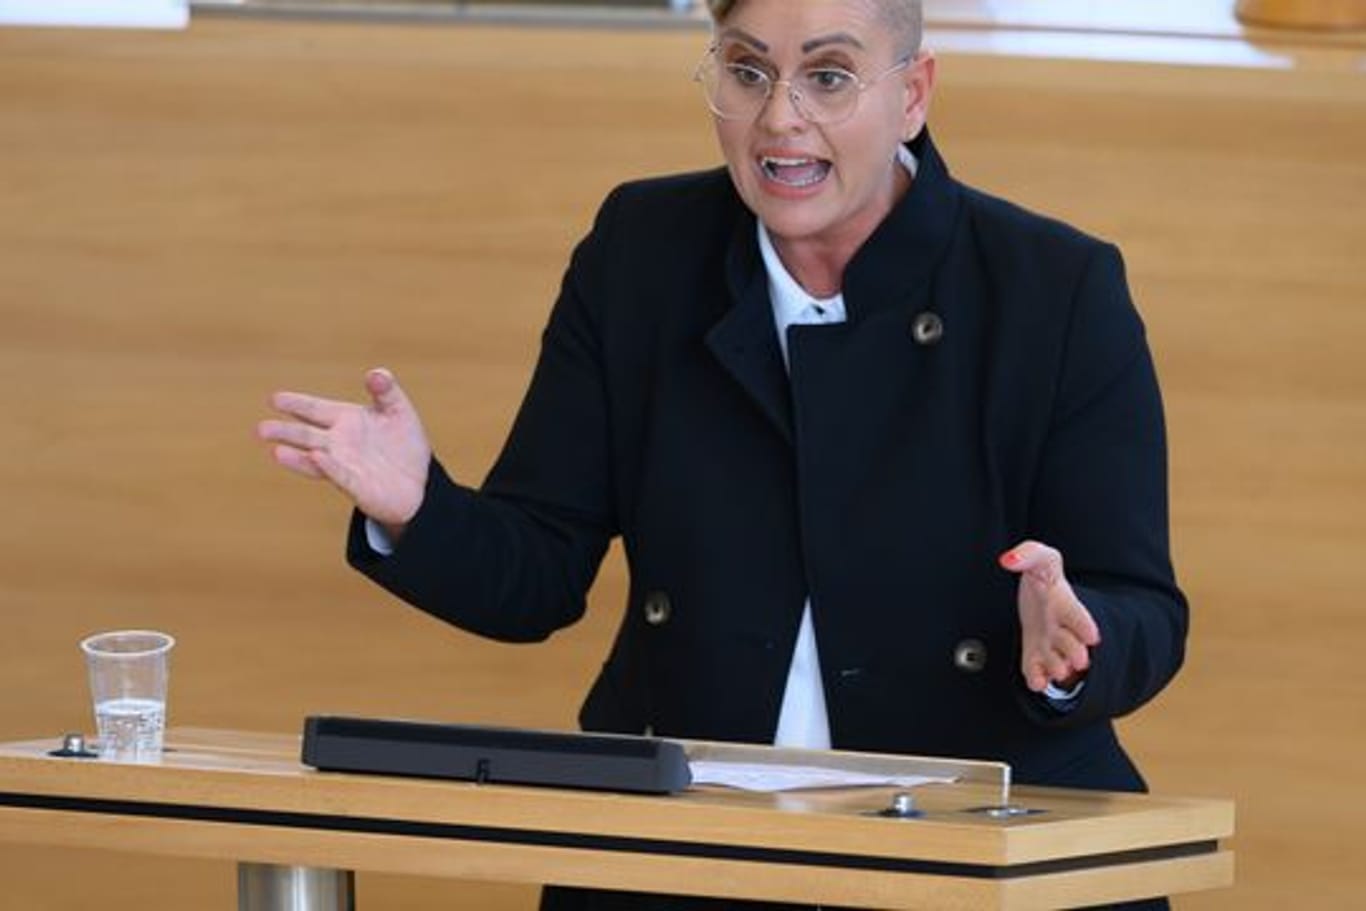 Luise Neuhaus-Wartenberg